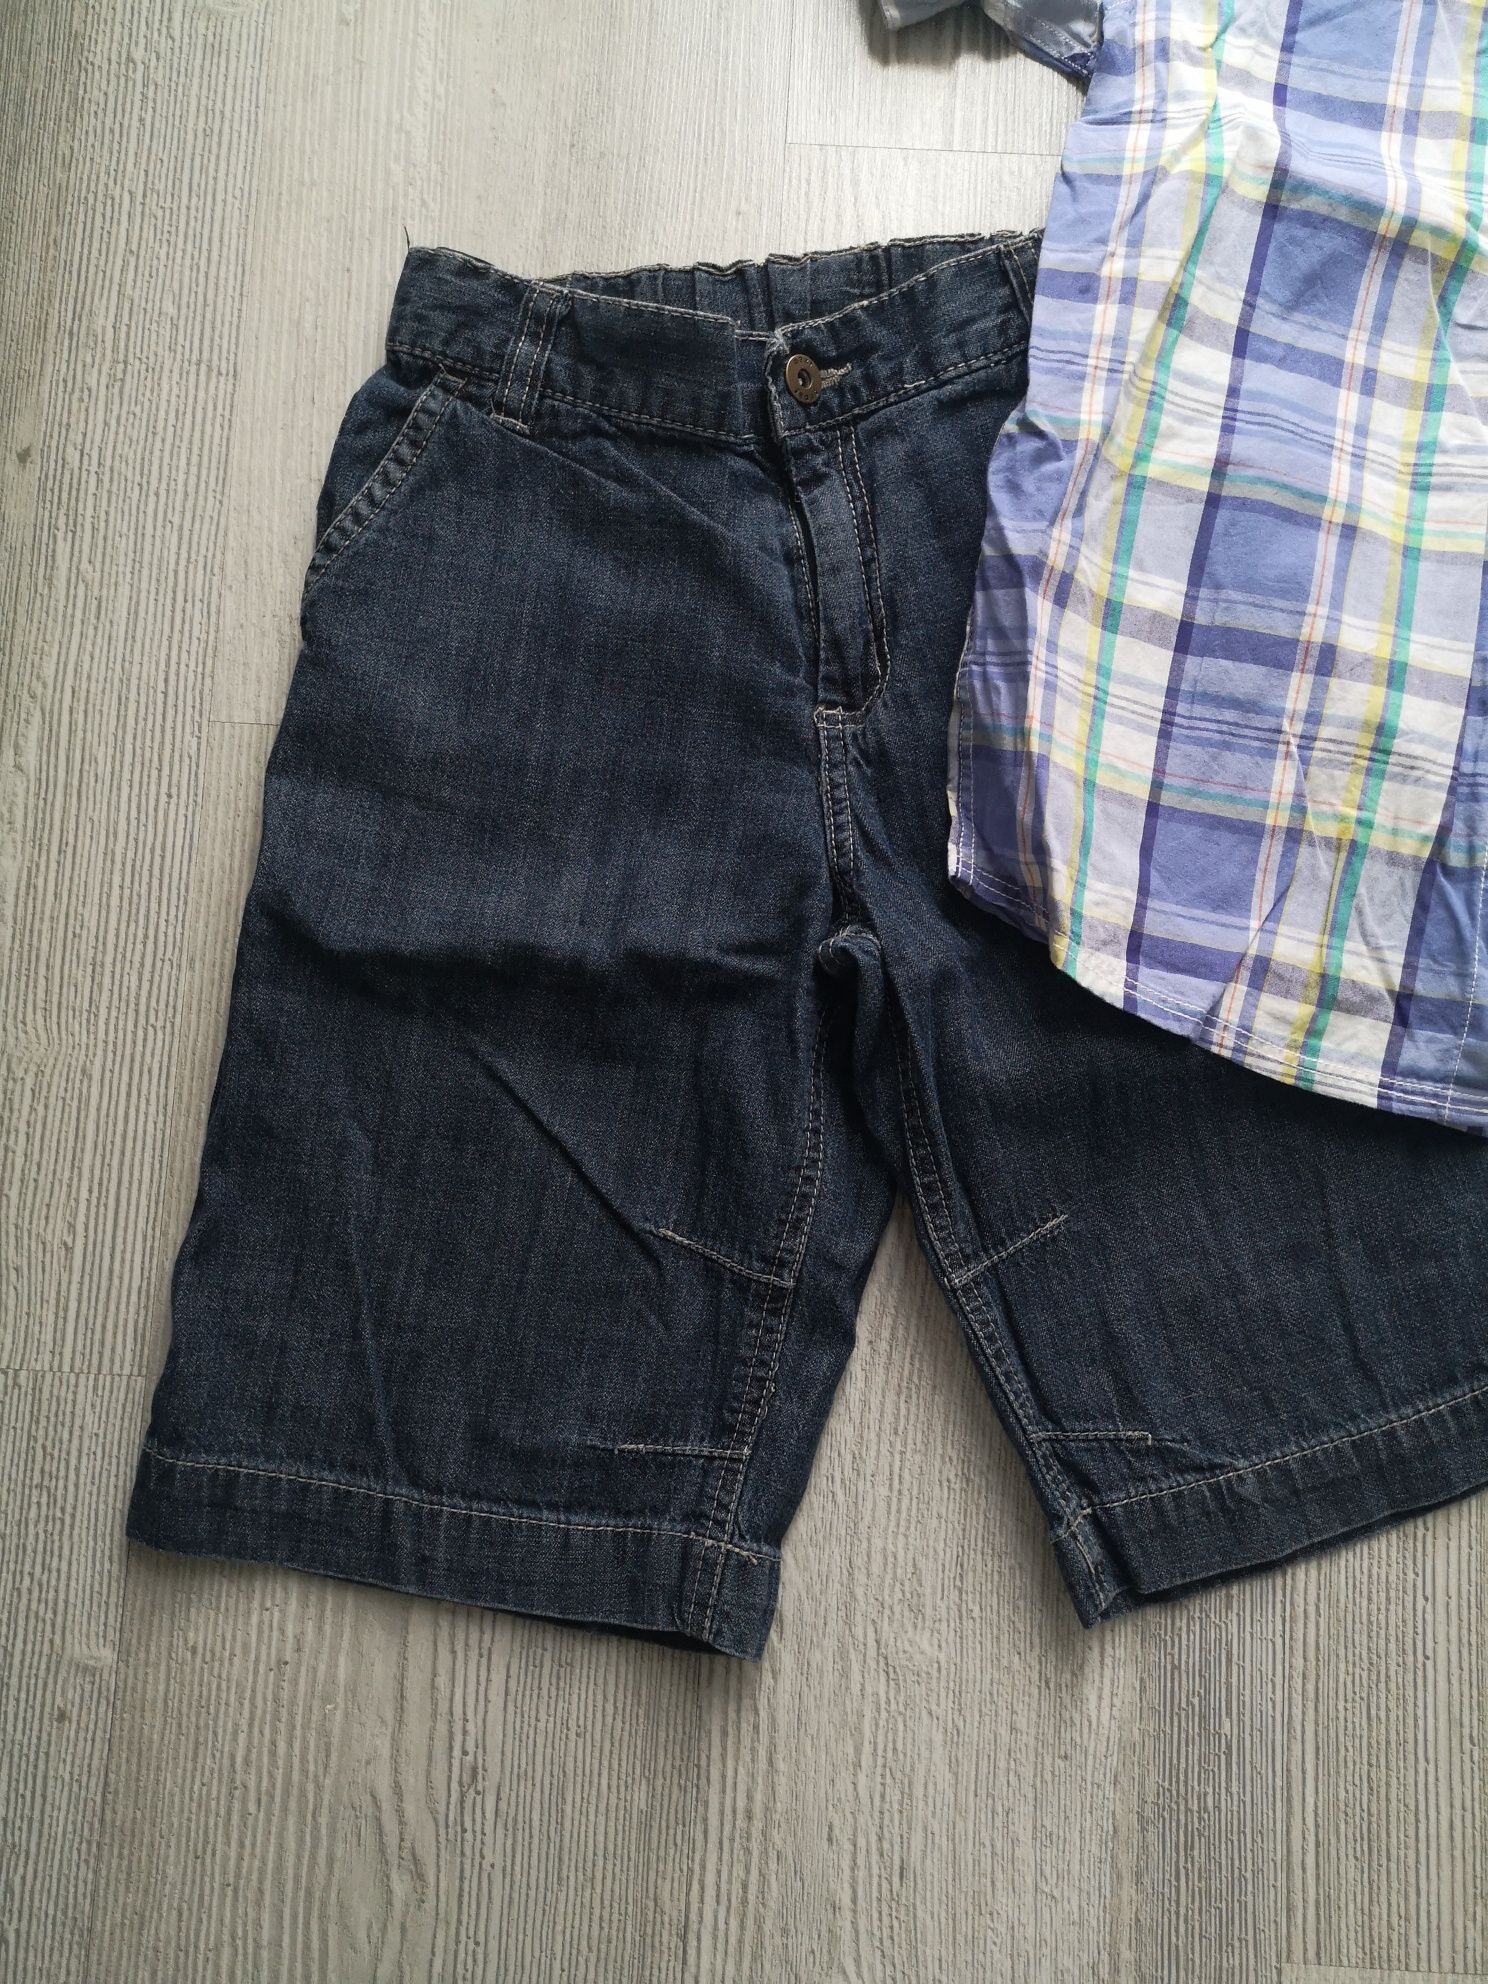 Next zestaw dla chłopca koszula + jeansowe spodenki